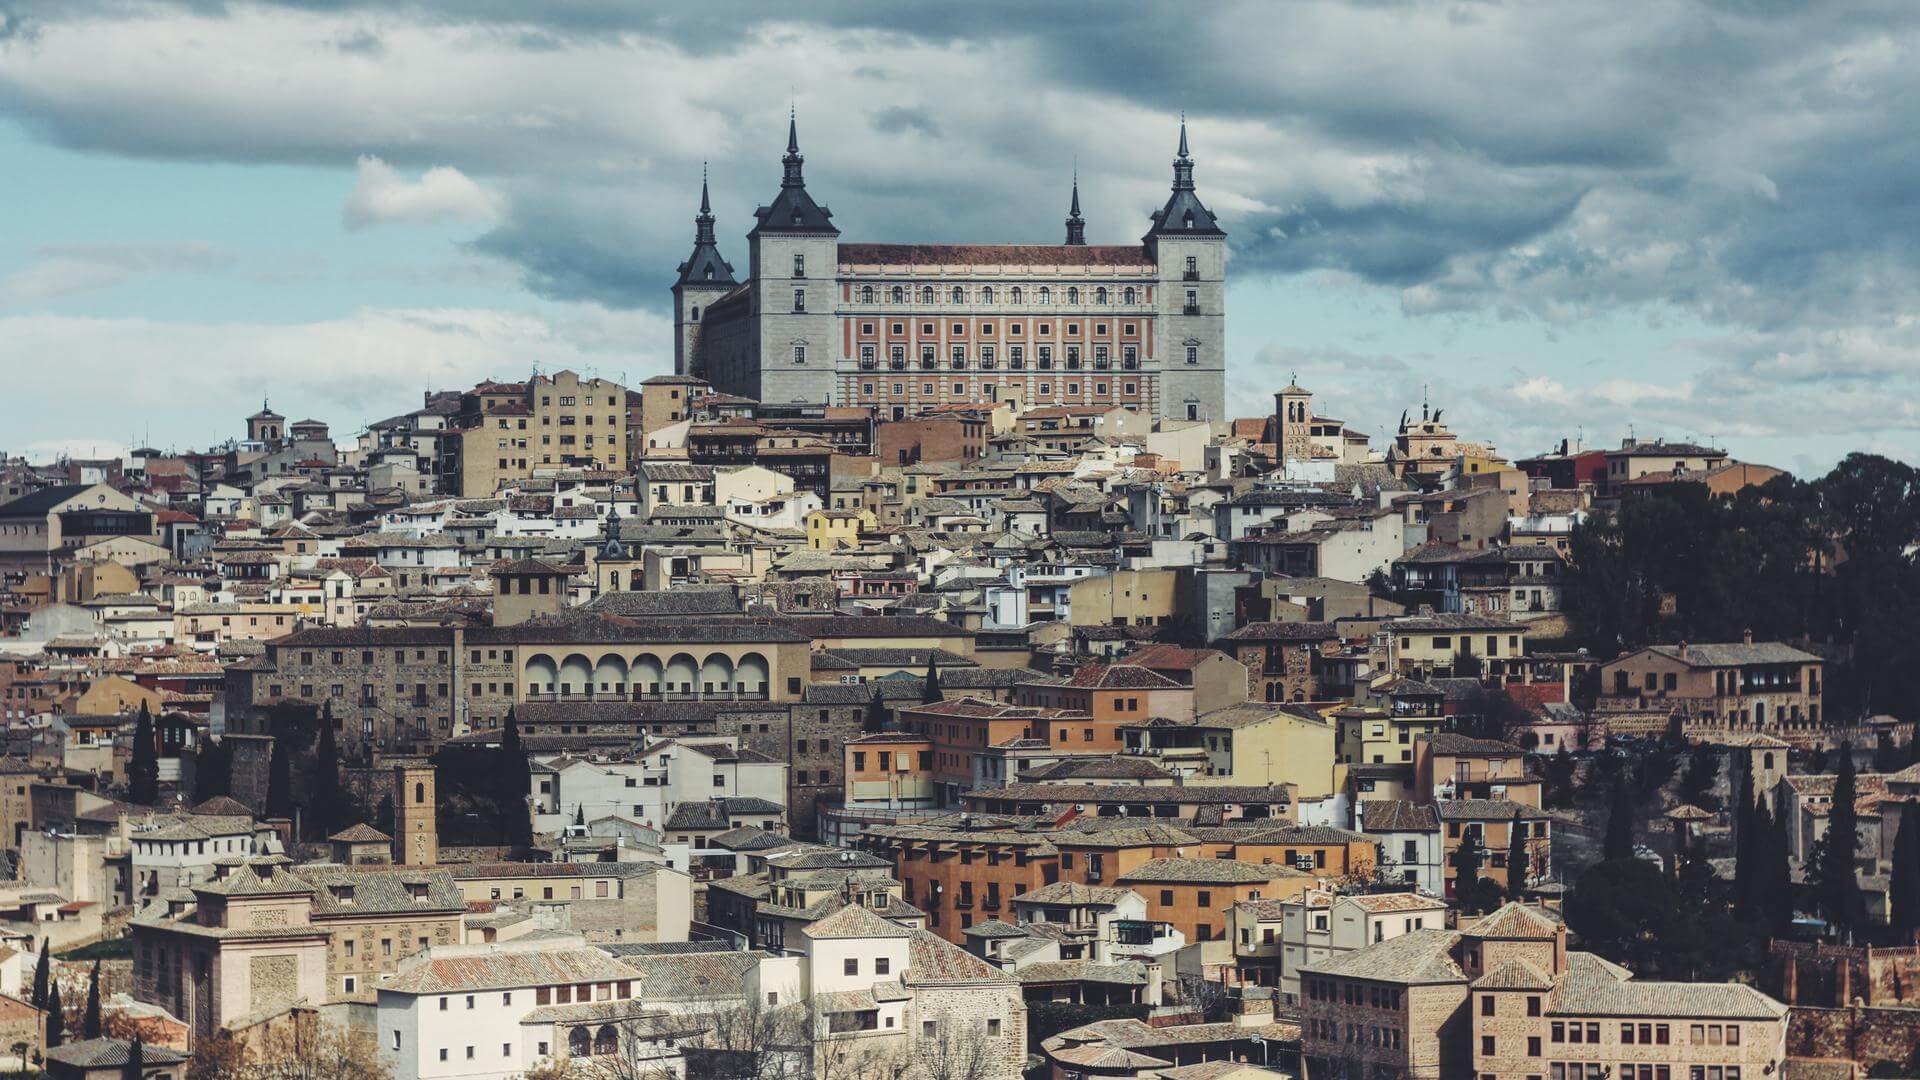 한눈에 내려다보이는 스페인의 도심 건물들